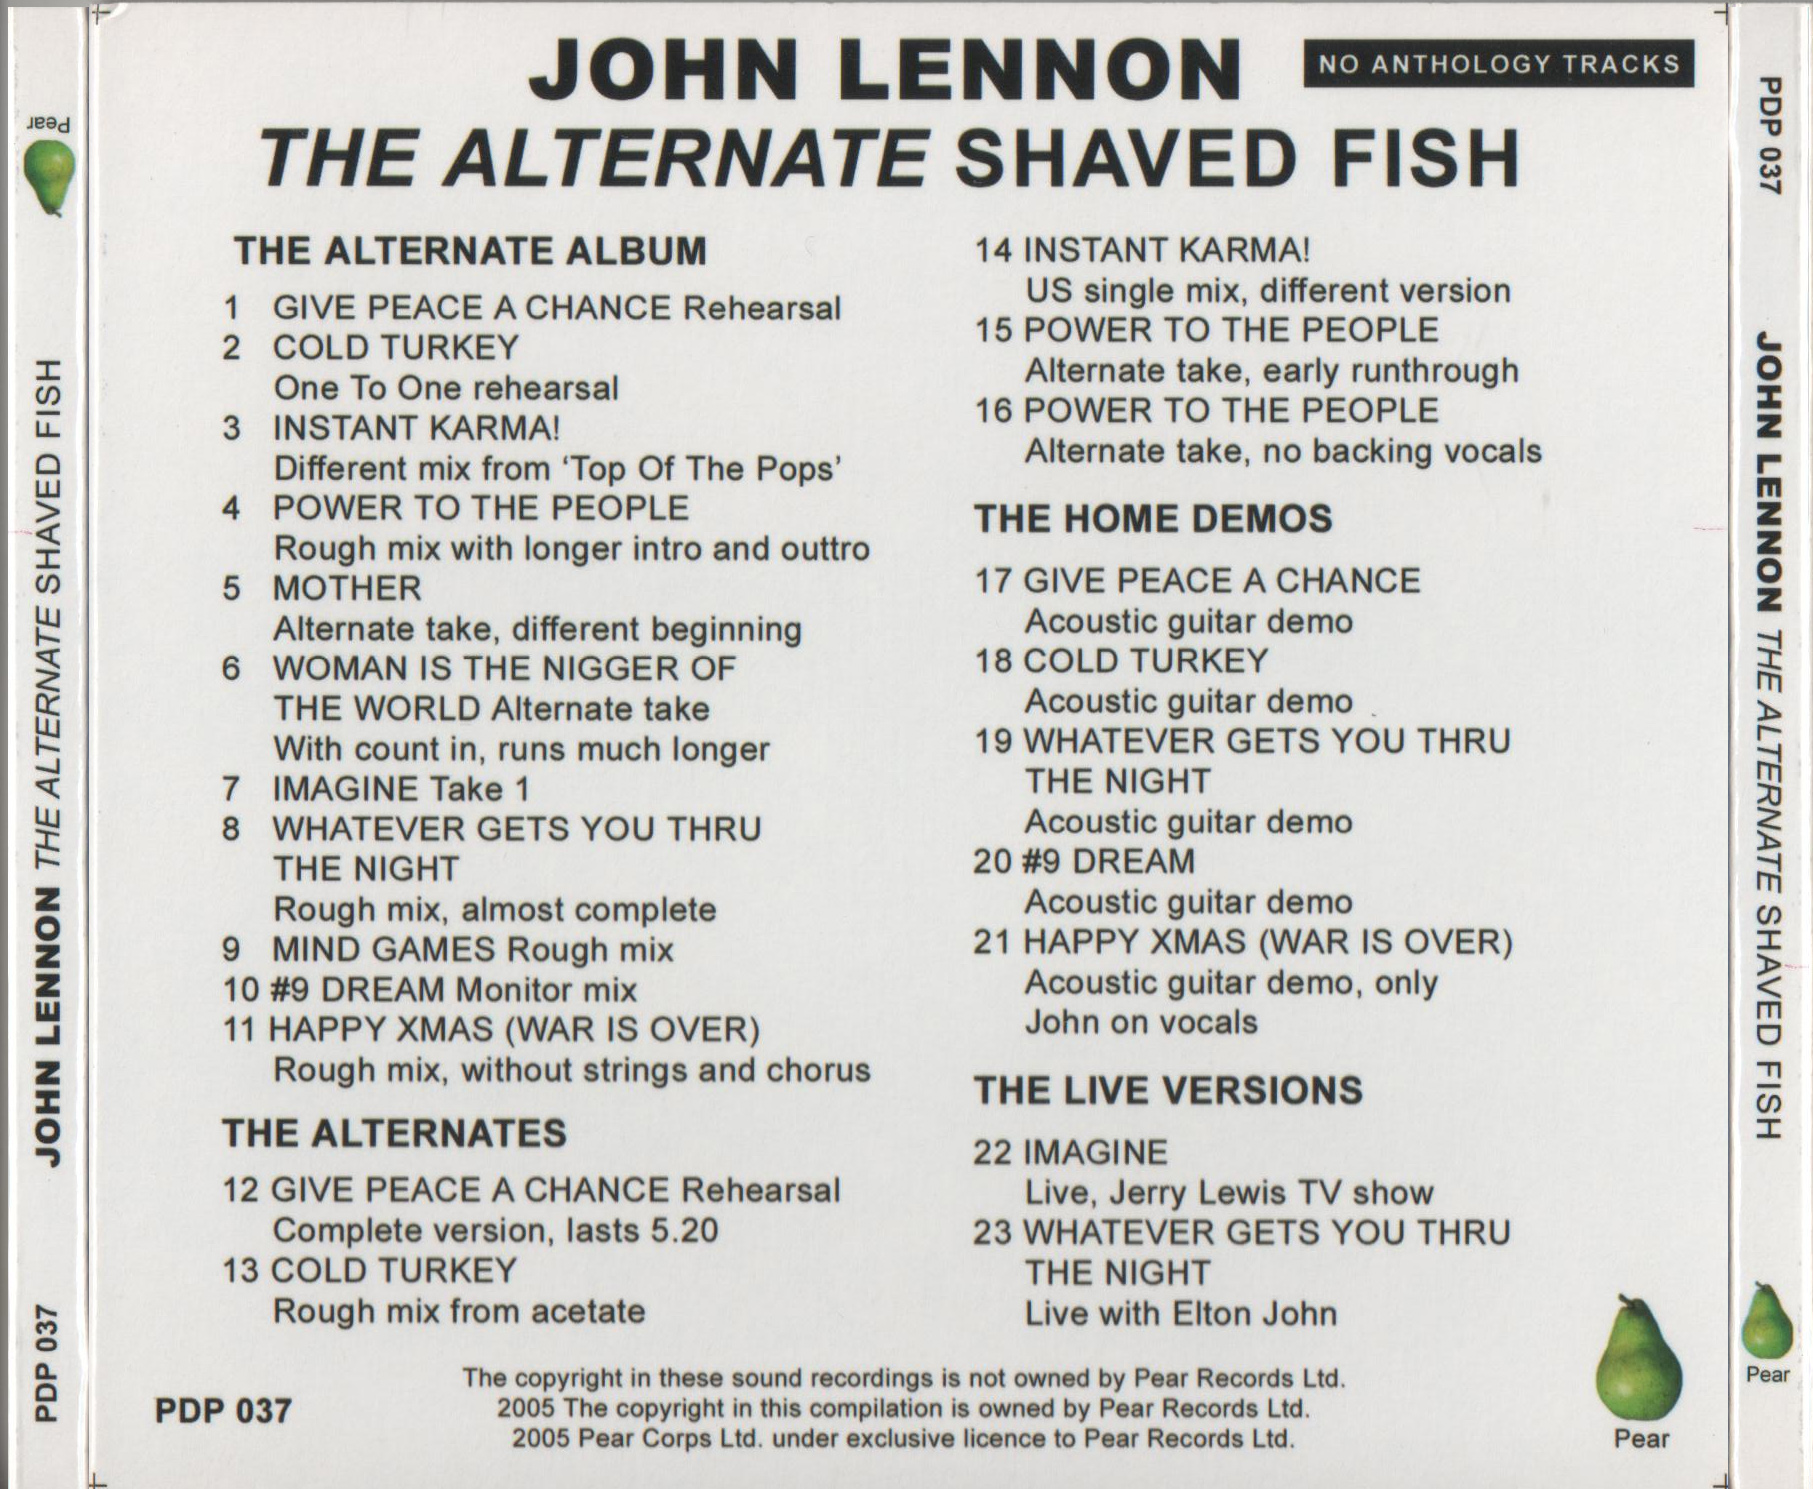 JohnLennon-AlternateShavedFish (8).jpg